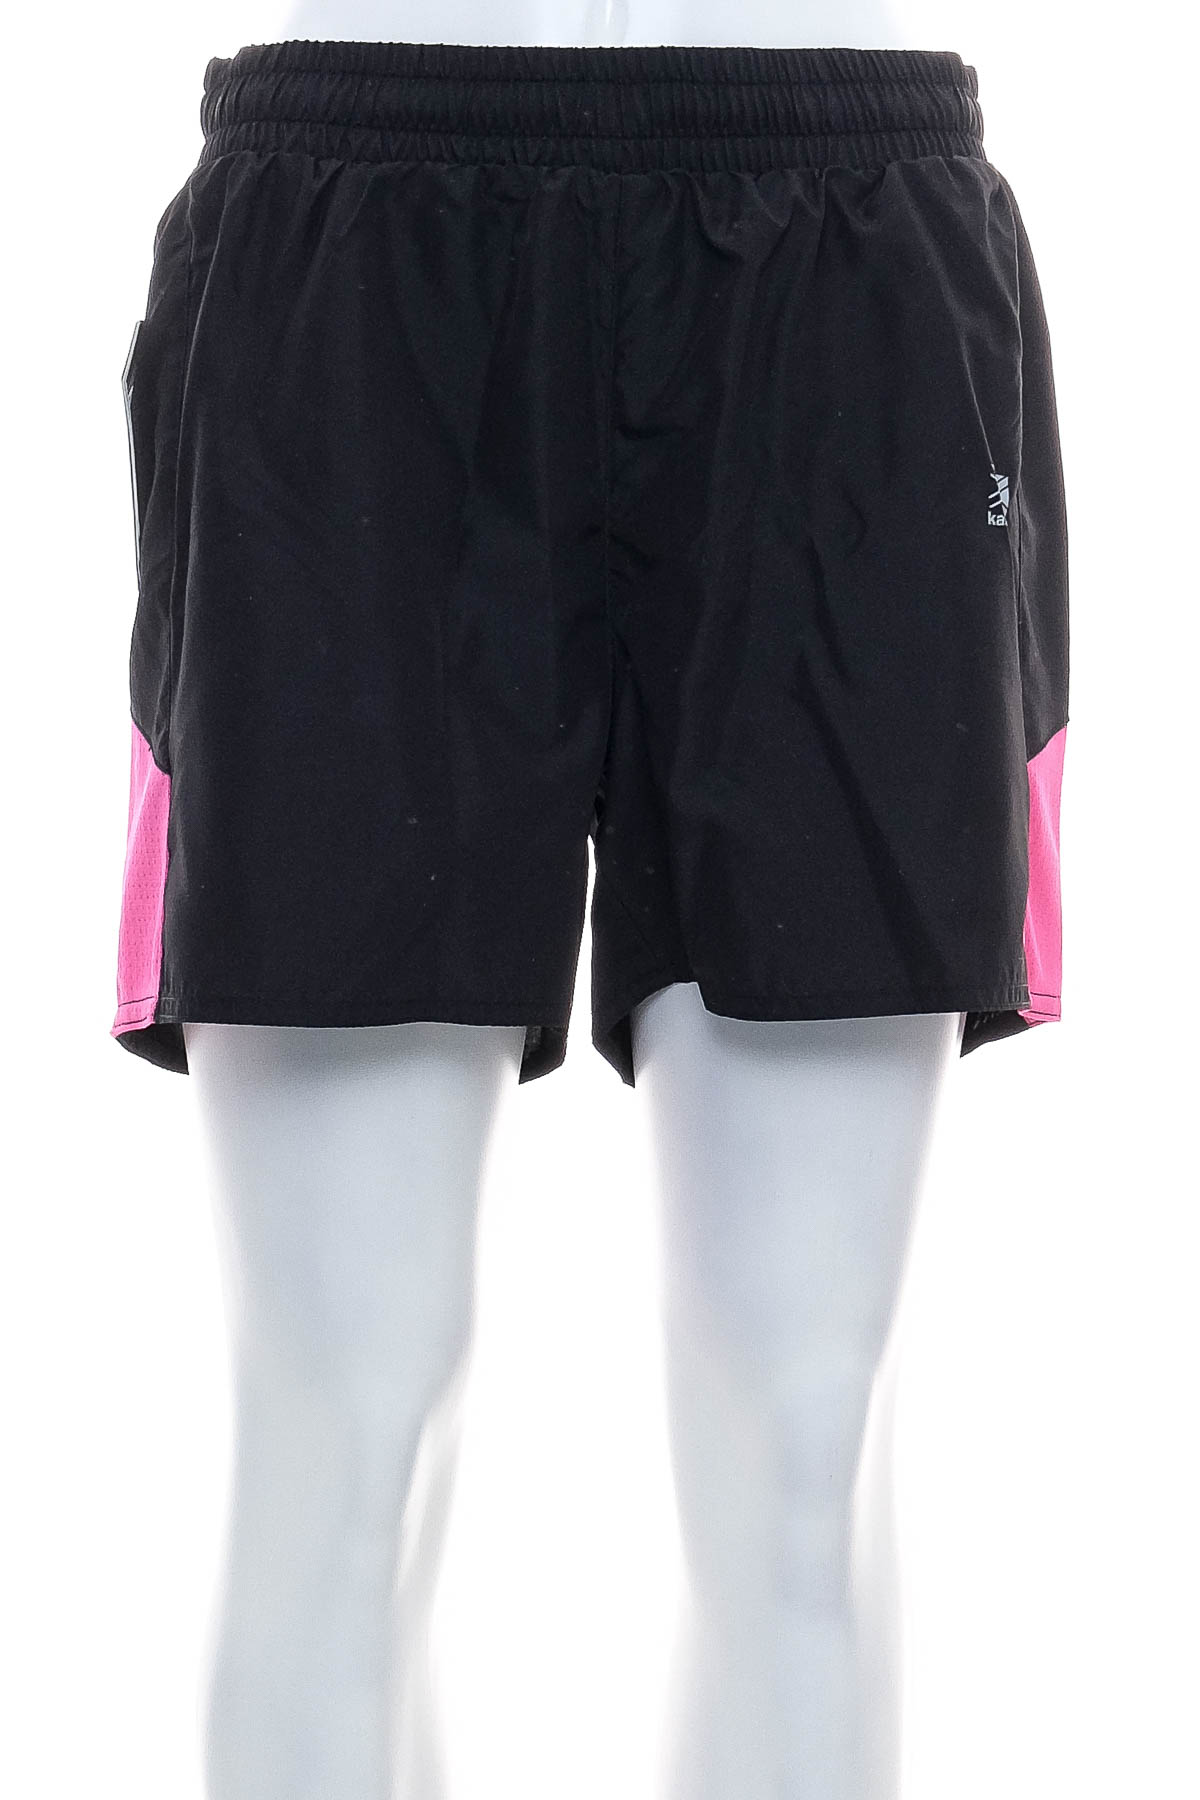 Women's shorts - Karrimor - 0